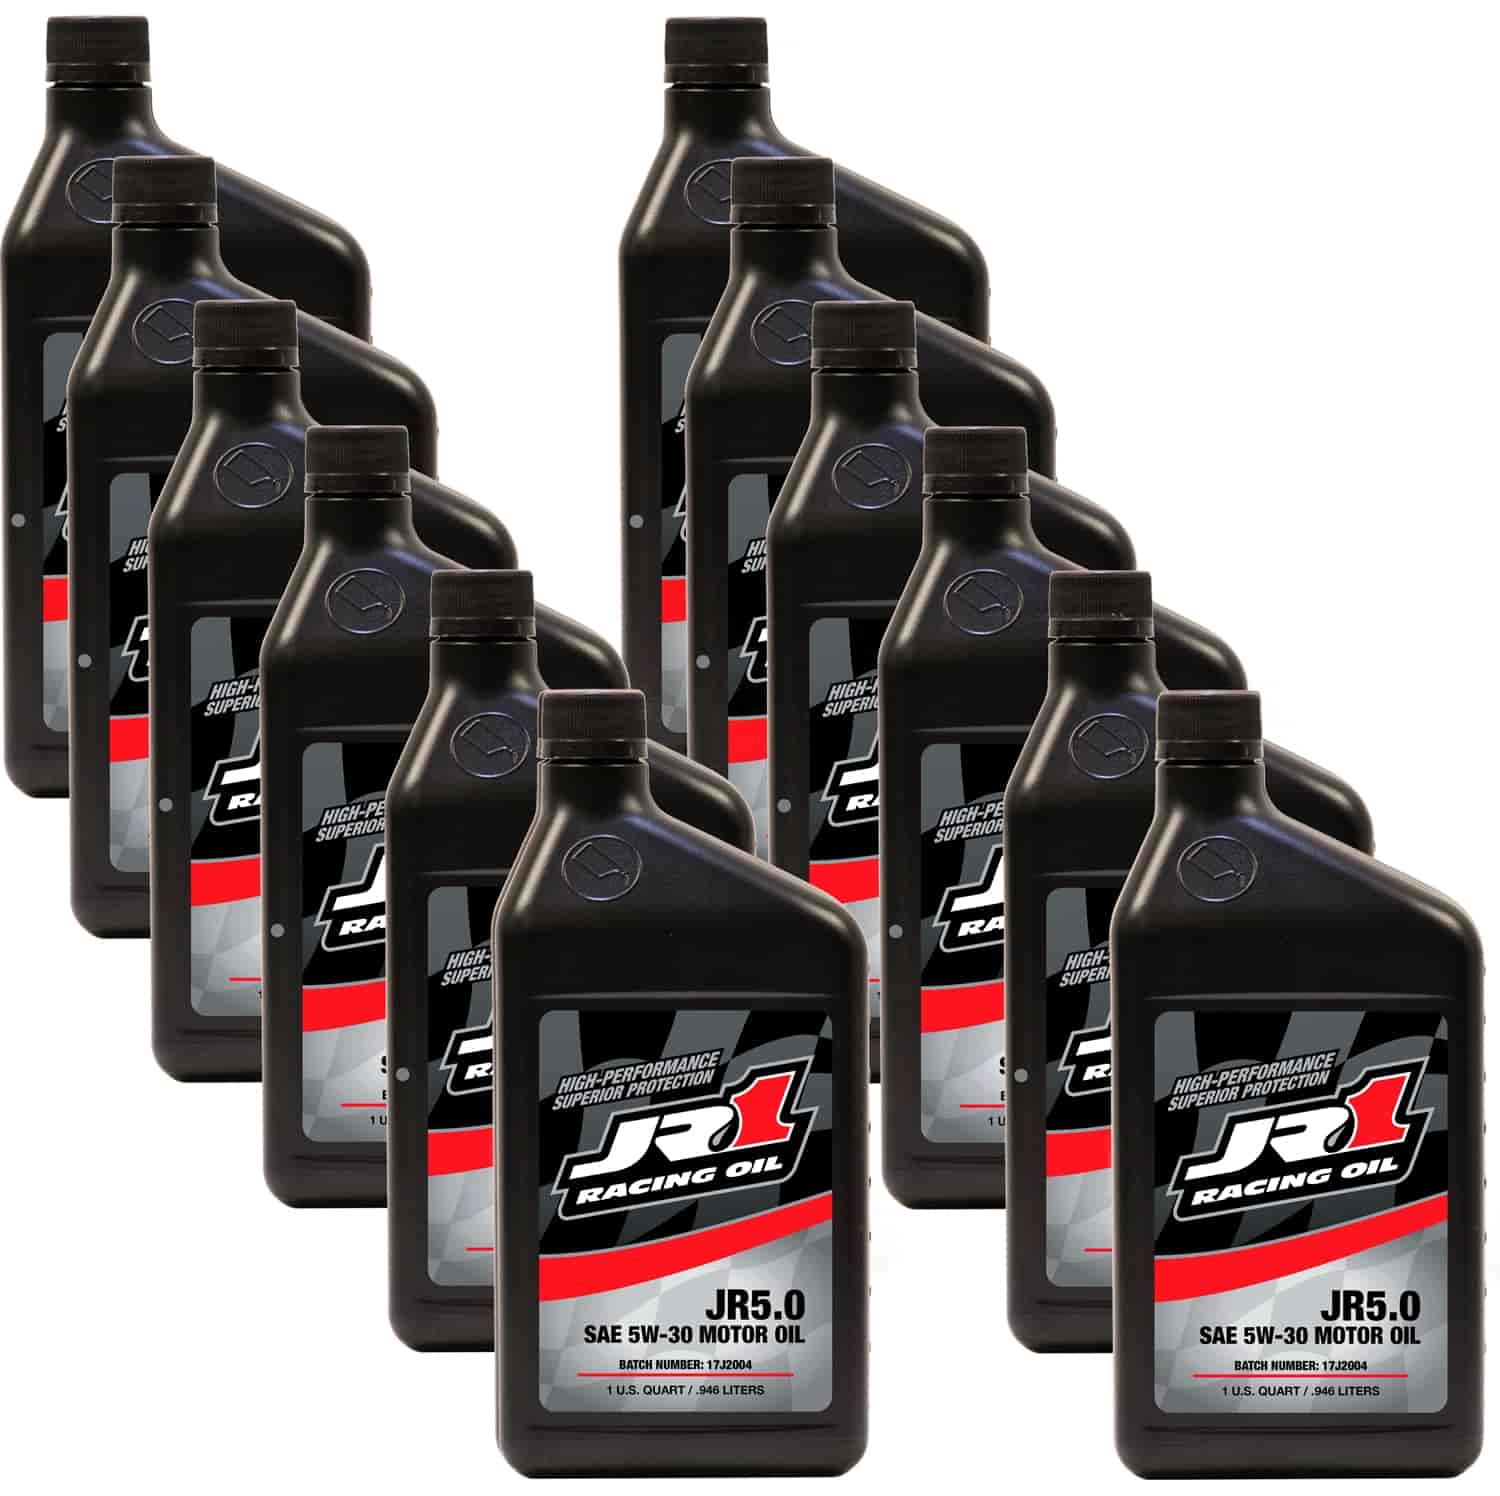 JR 5.0 5W30 Synthetic Race Oil 12 Quarts